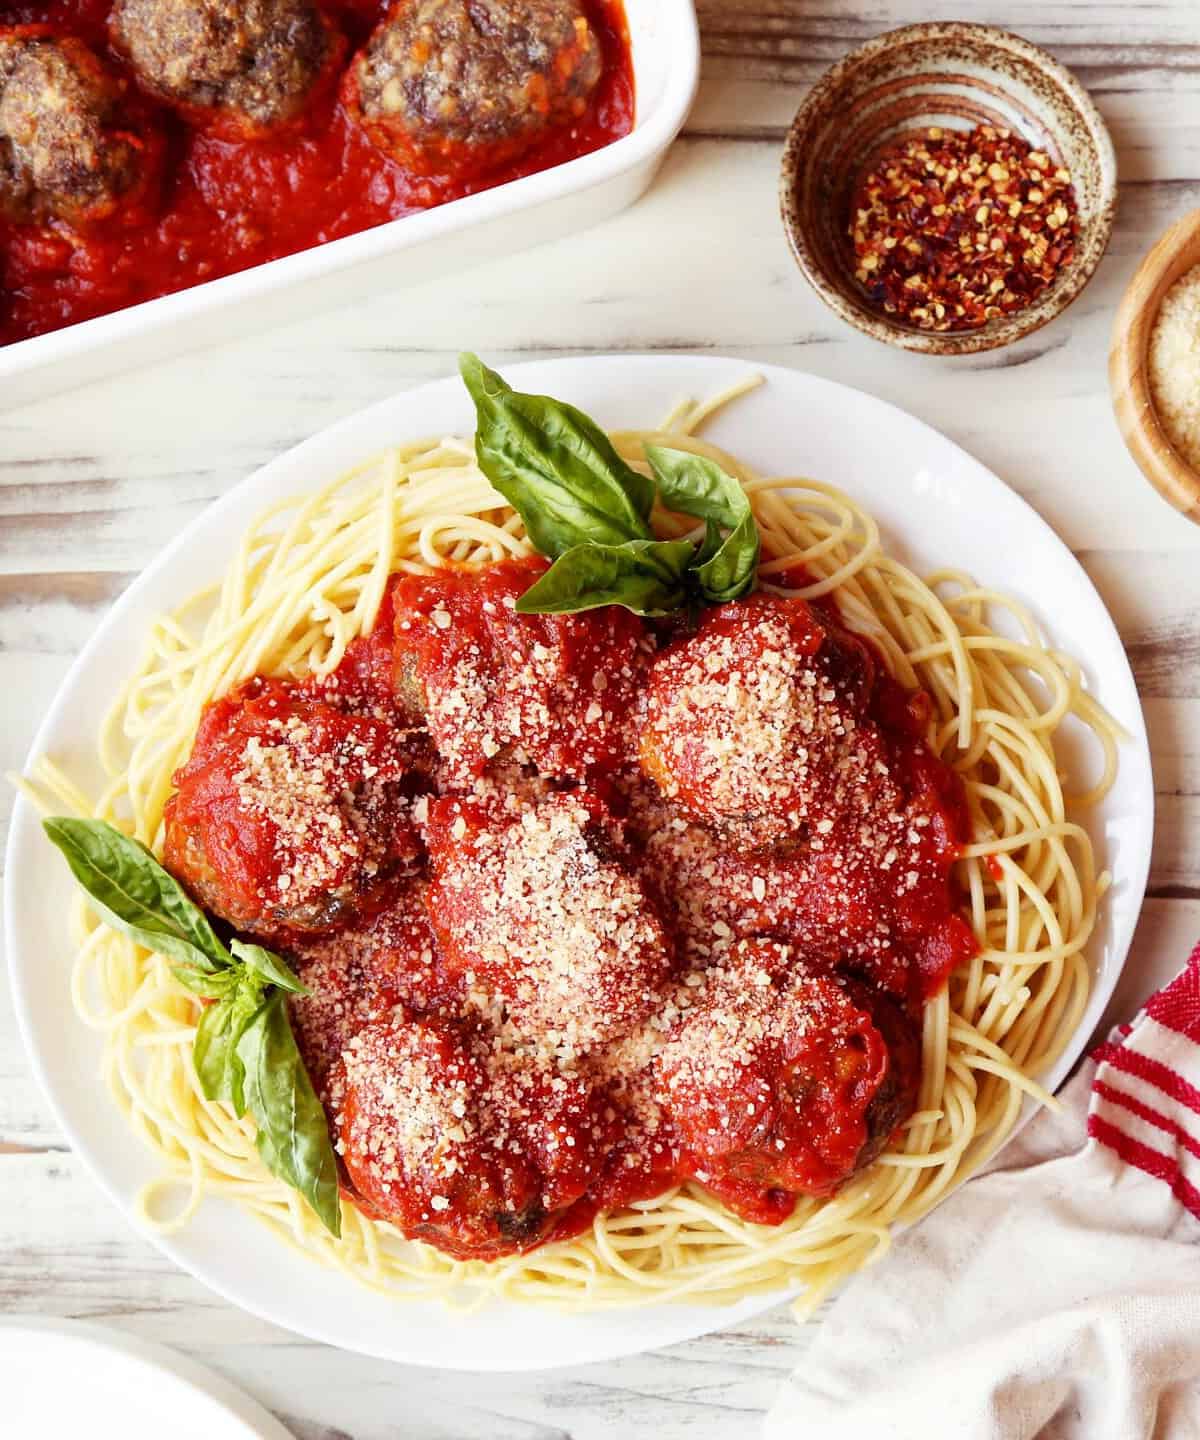 Making Authentic Italian Meatballs Has Never Been Easier!